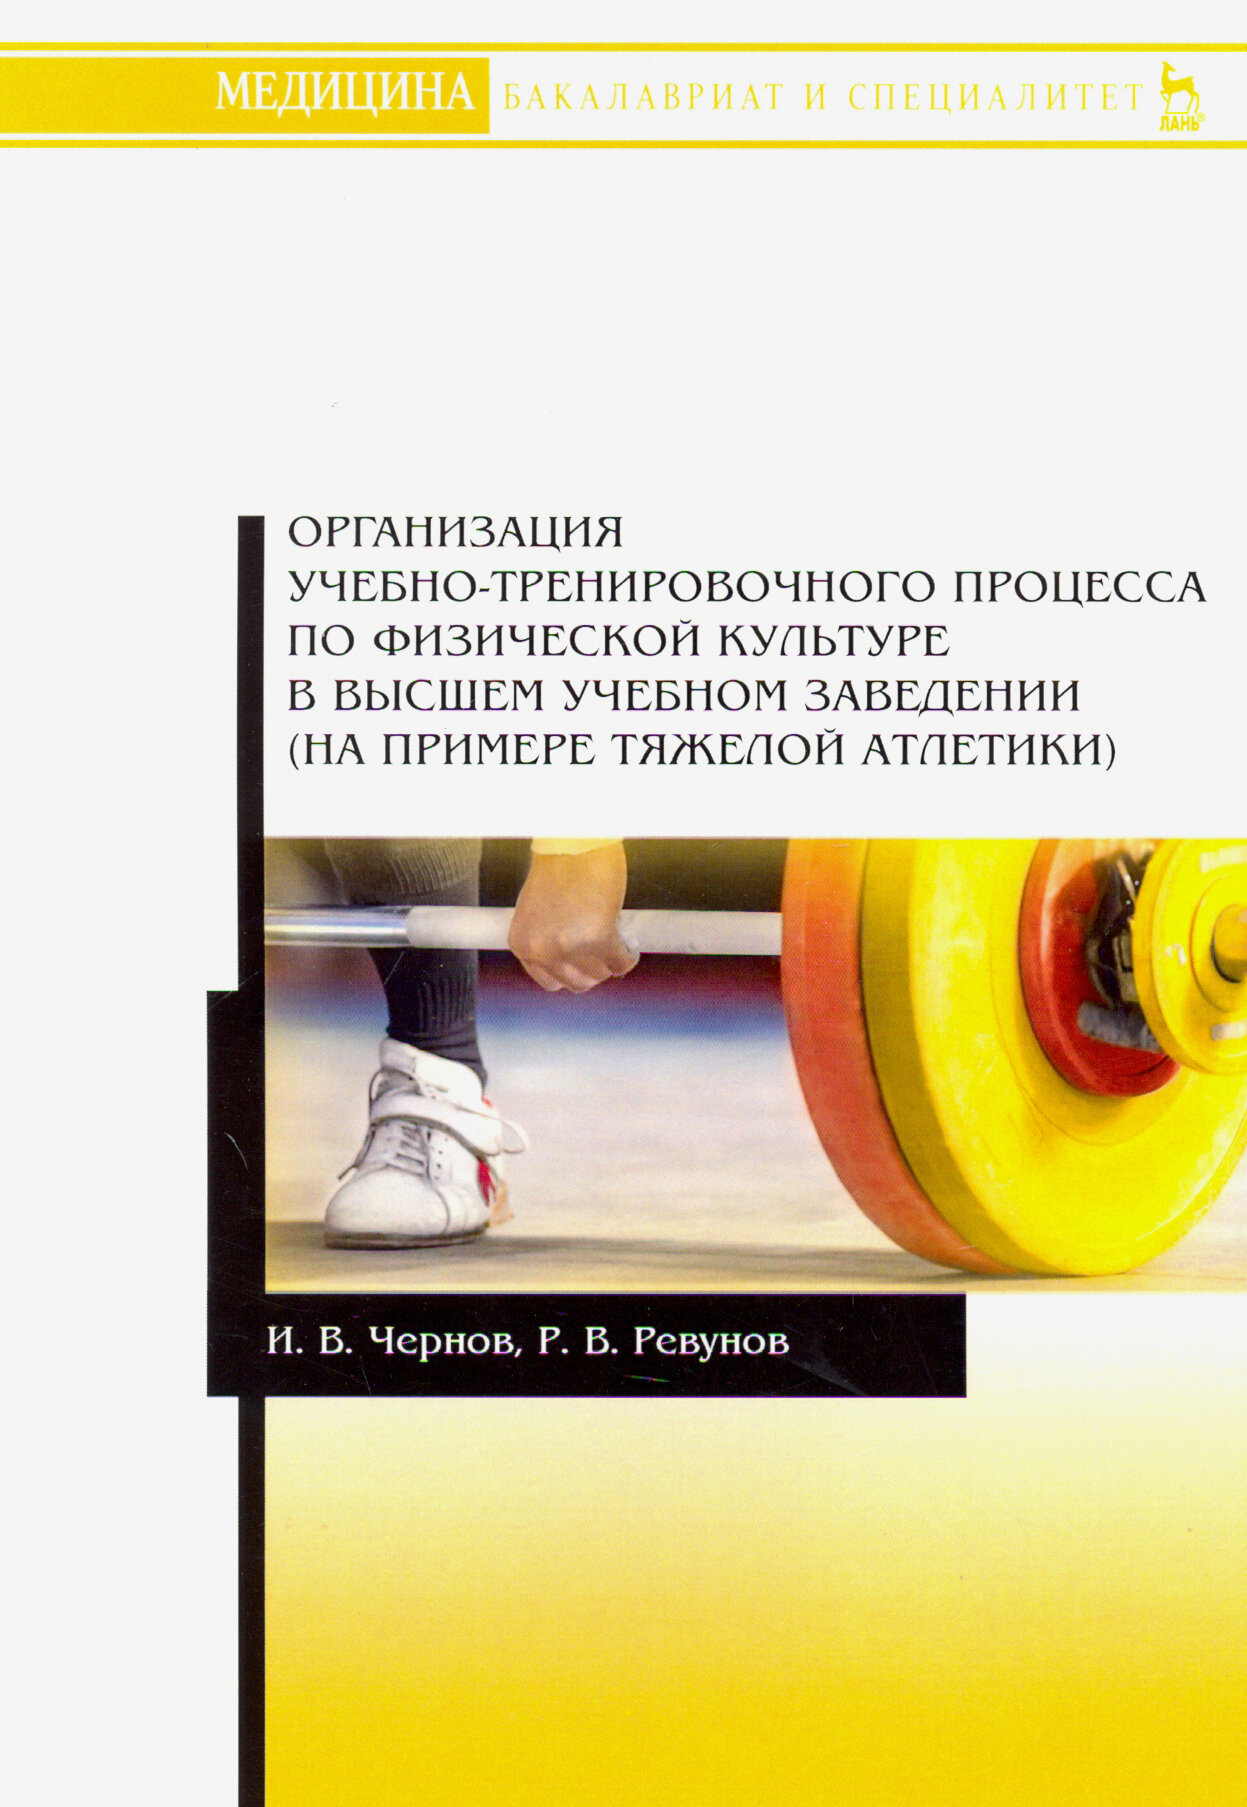 Организация учебно-тренировочного процесса по физической культуре в высшем учебном заведении - фото №3